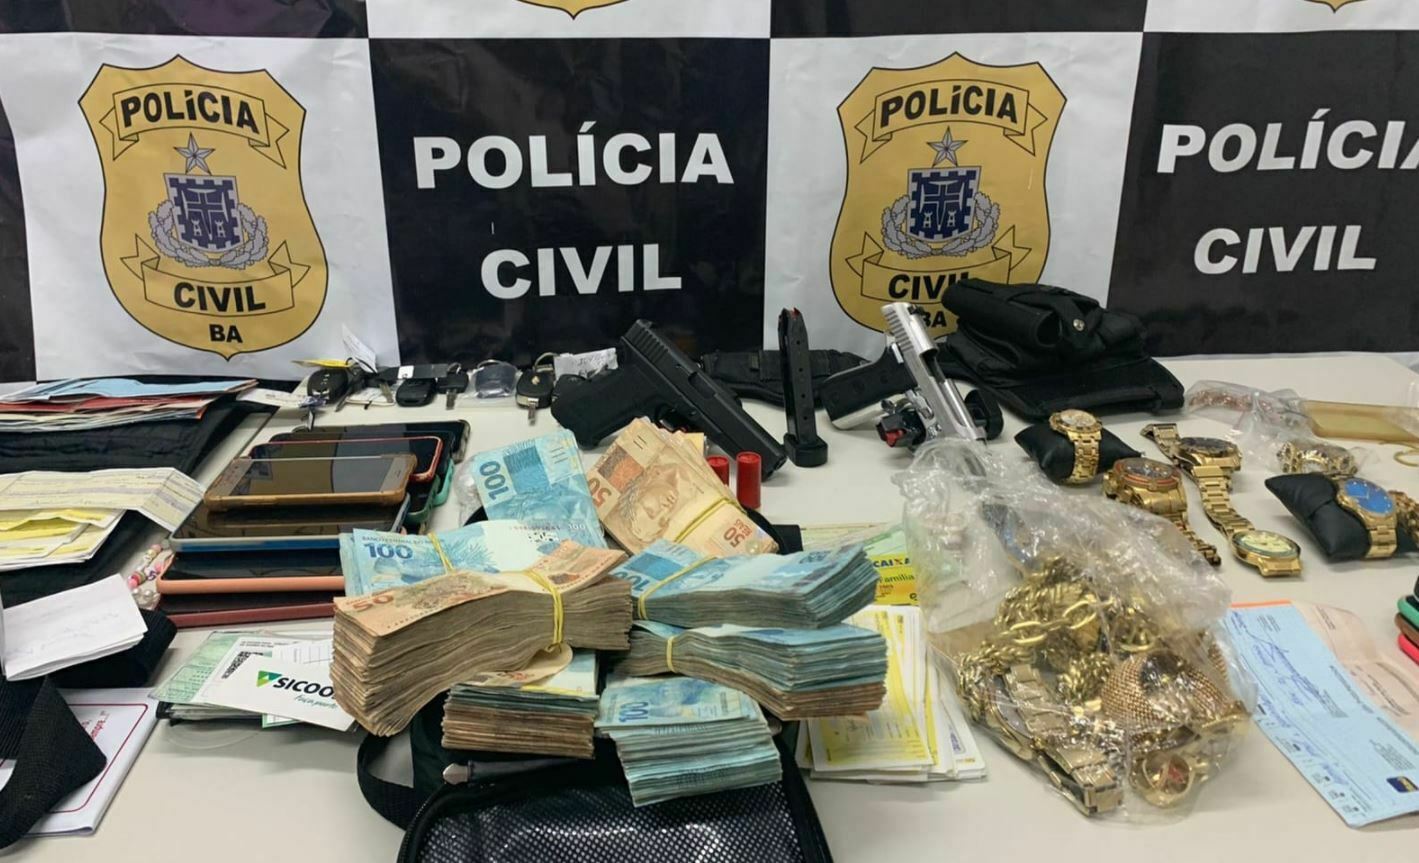 Foto mostra grande quantidade de dinheiro, celulares, armas, relógios, cheque e joias apreendidos em acampamento cigano. Ao fundo, um painel da Polícia Civil da Bahia